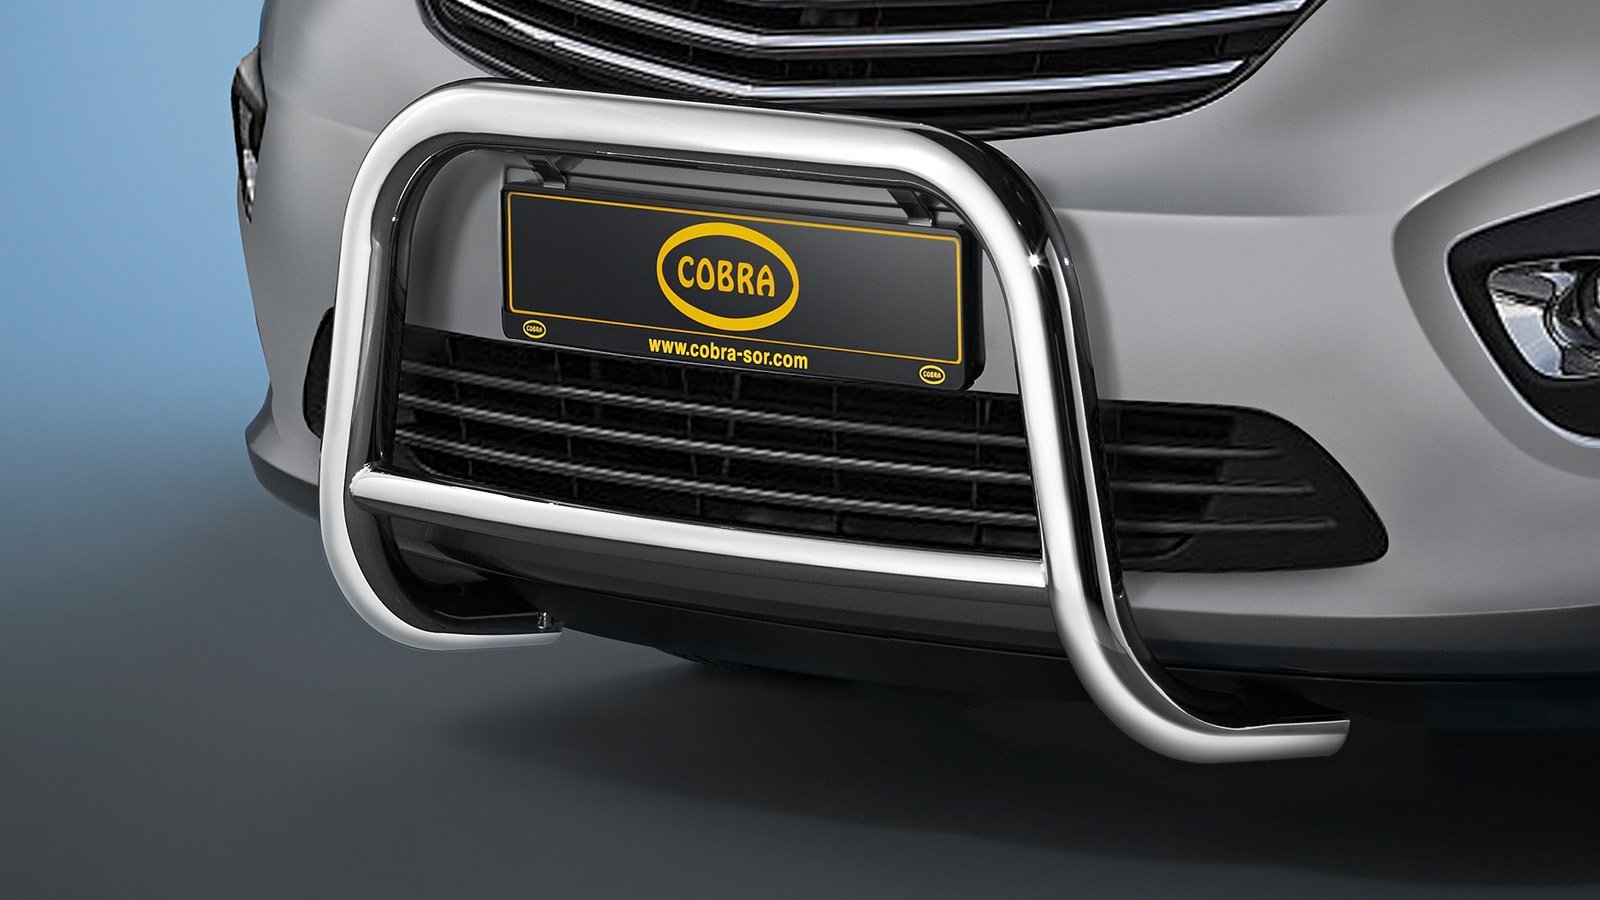 Opel Vivaro Valorauta 2014-2019 (Cobra)